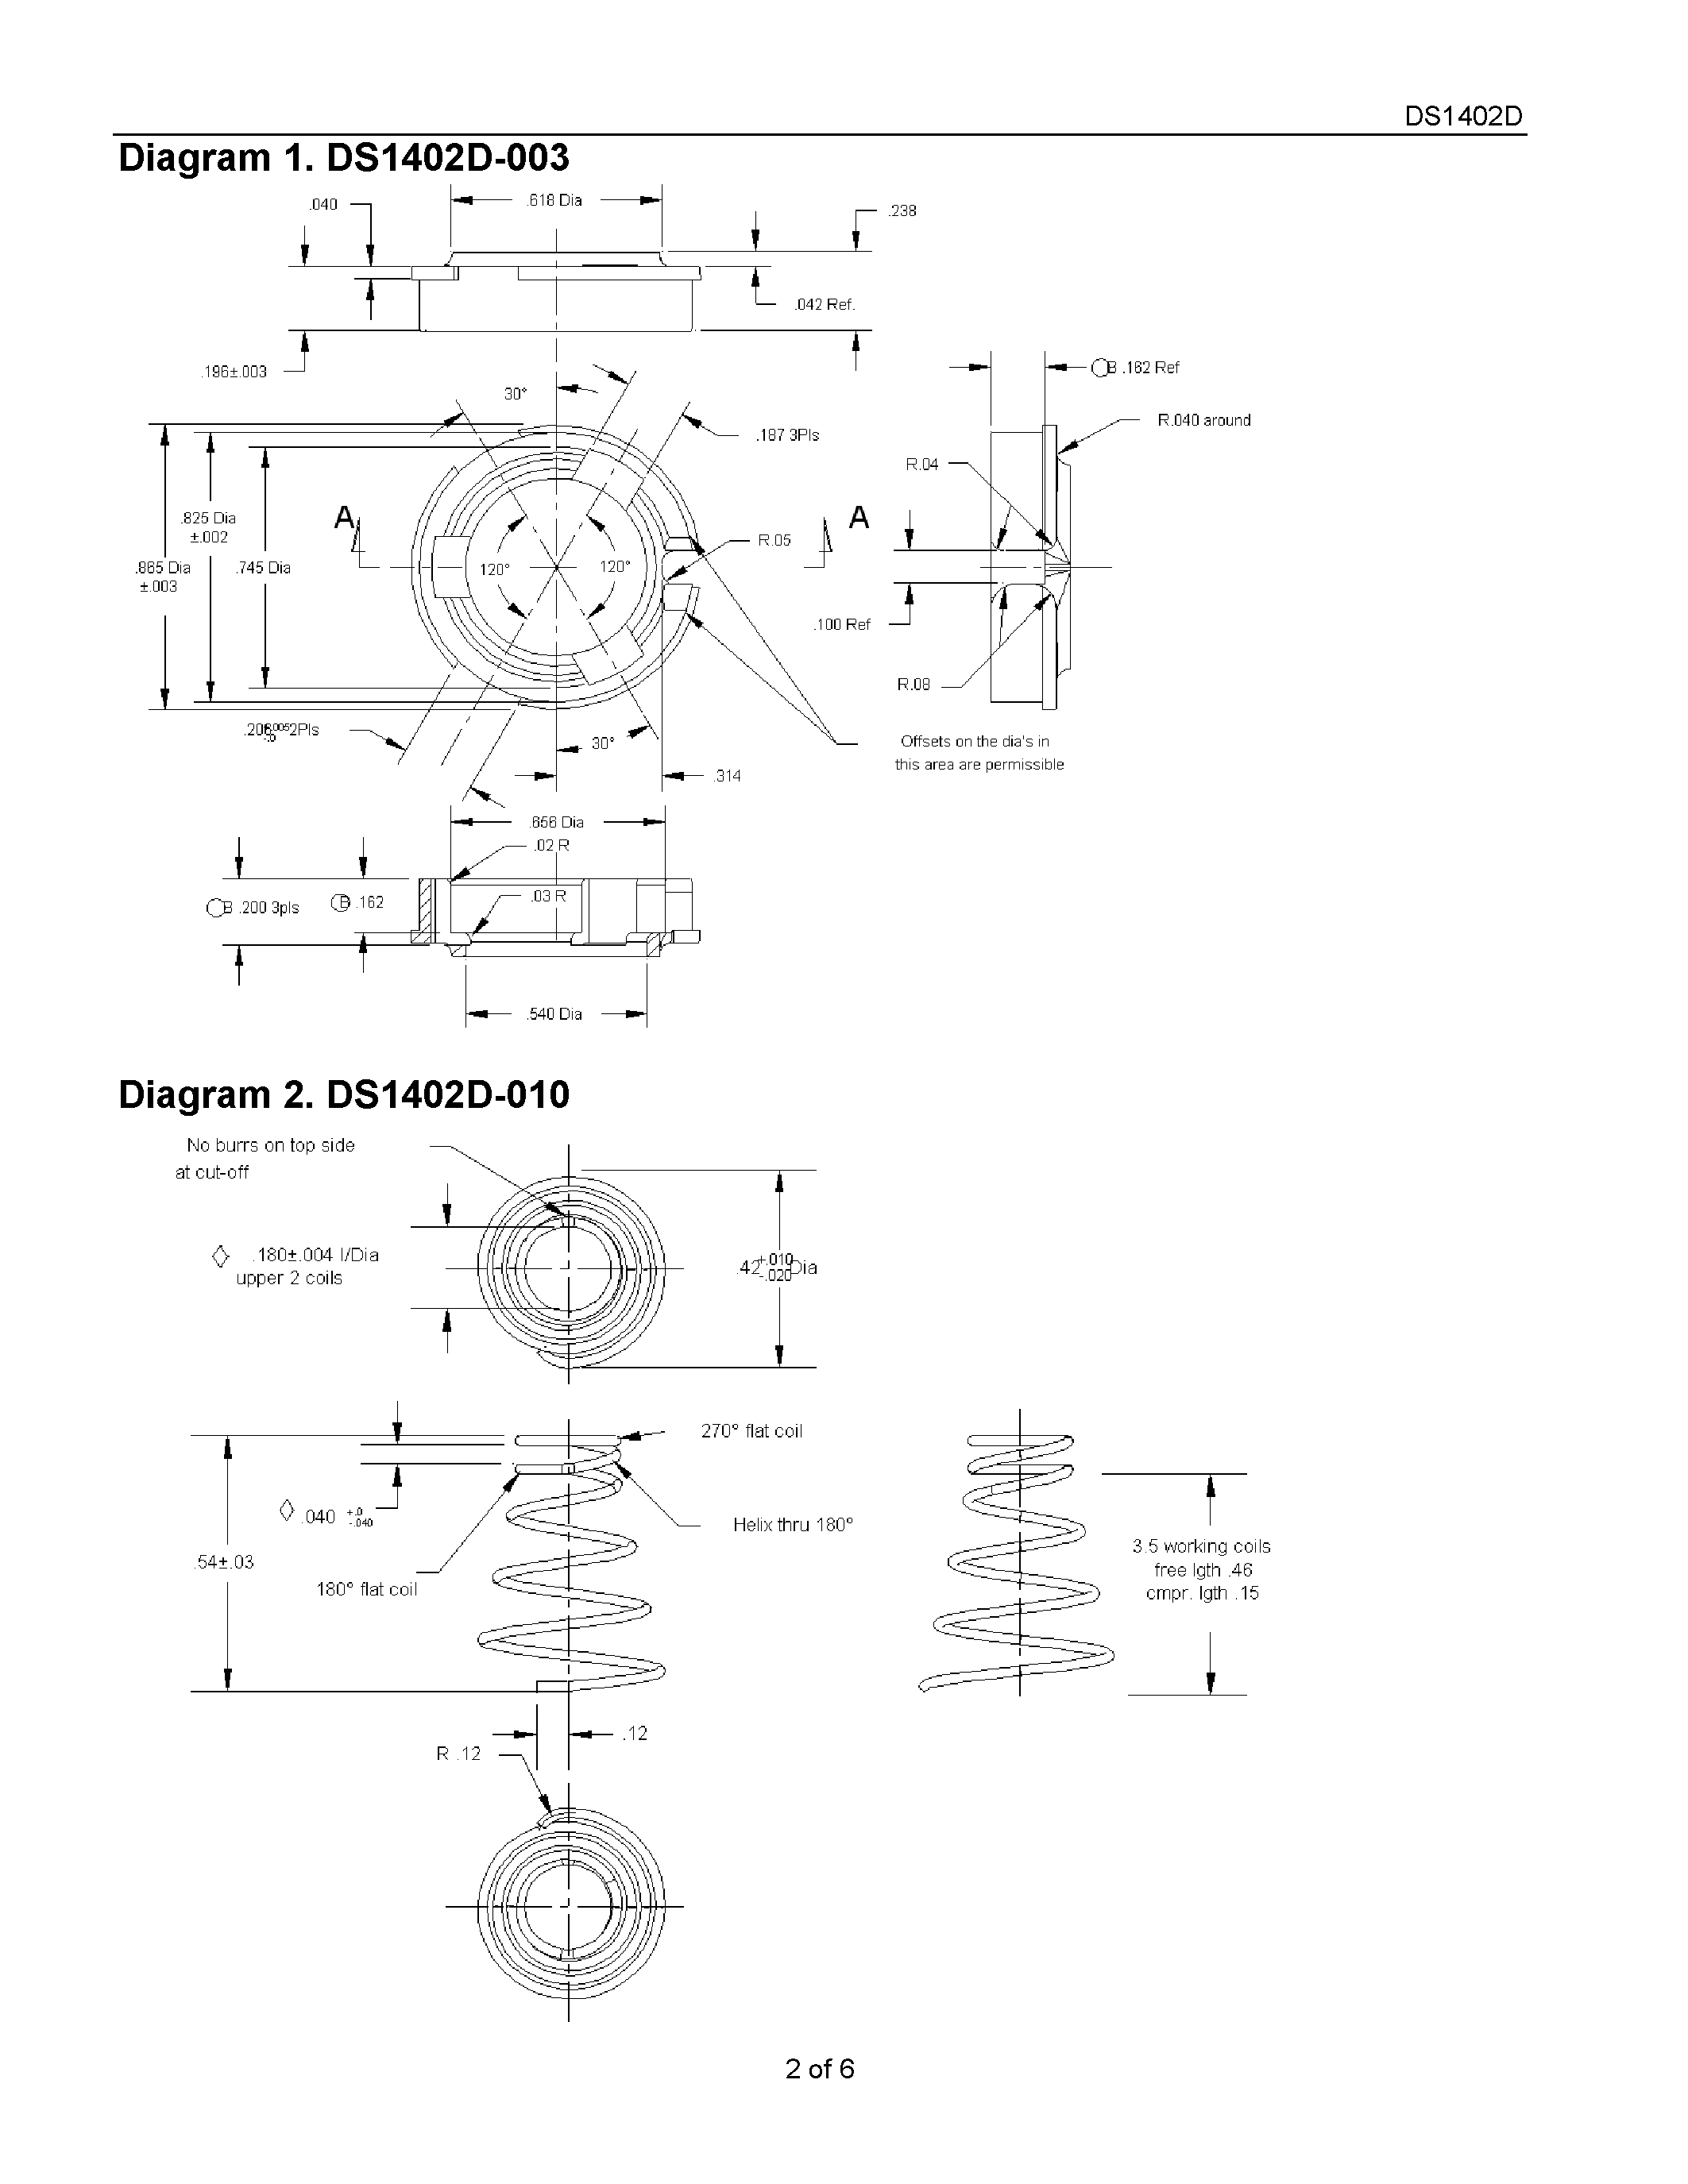 Даташит DS1402D-011 - iButton Probe Component Parts страница 2